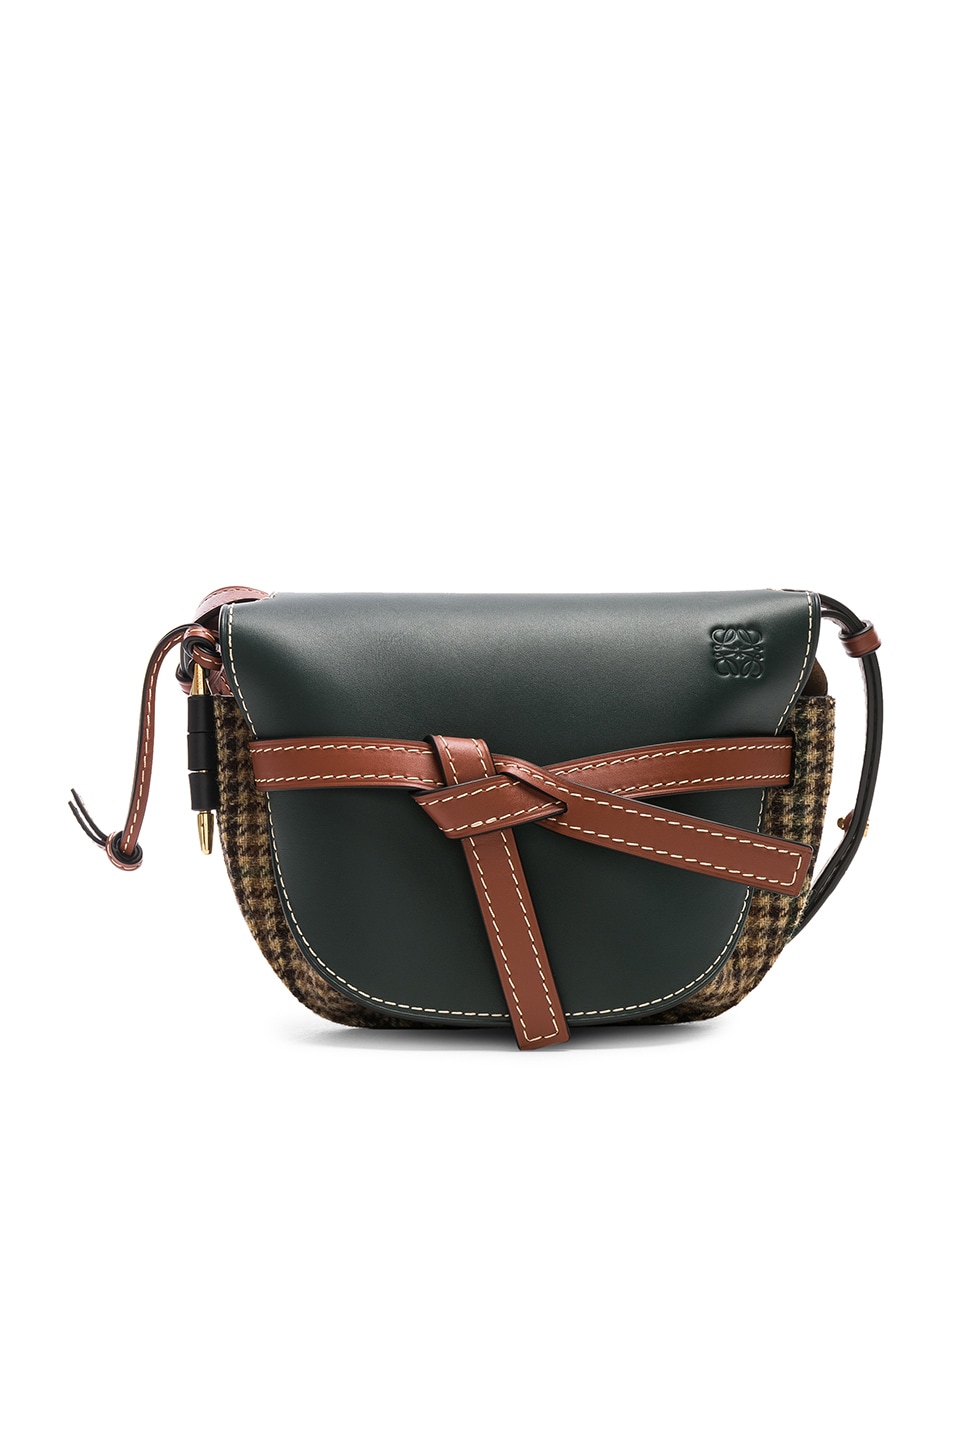 Image 1 of Loewe Gate Tweed Small Bag in Cypress & Tan